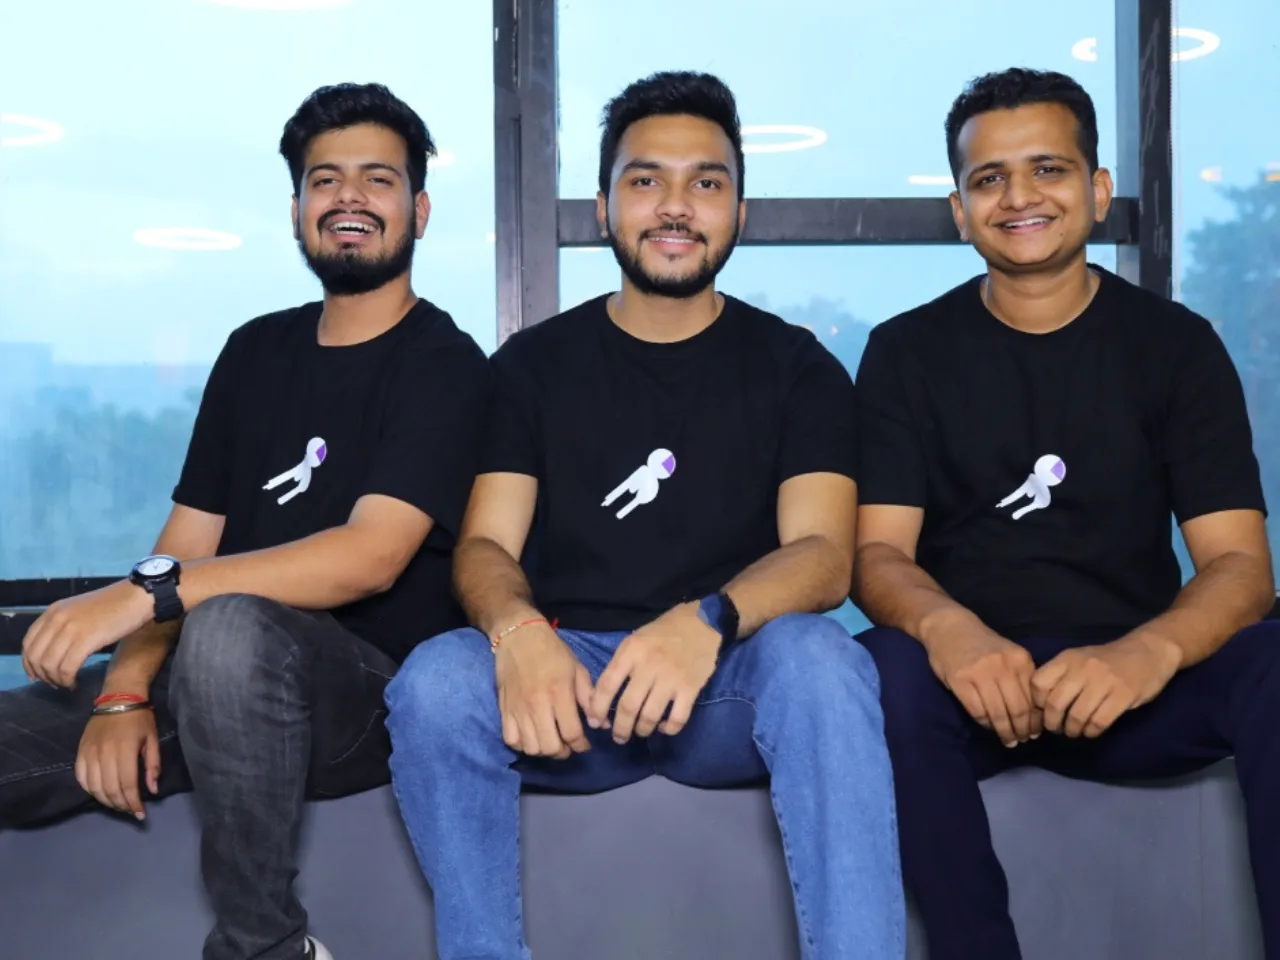 YouVah Founders Chetan Jachpure, Raghav Parsai, and Rohit Jain